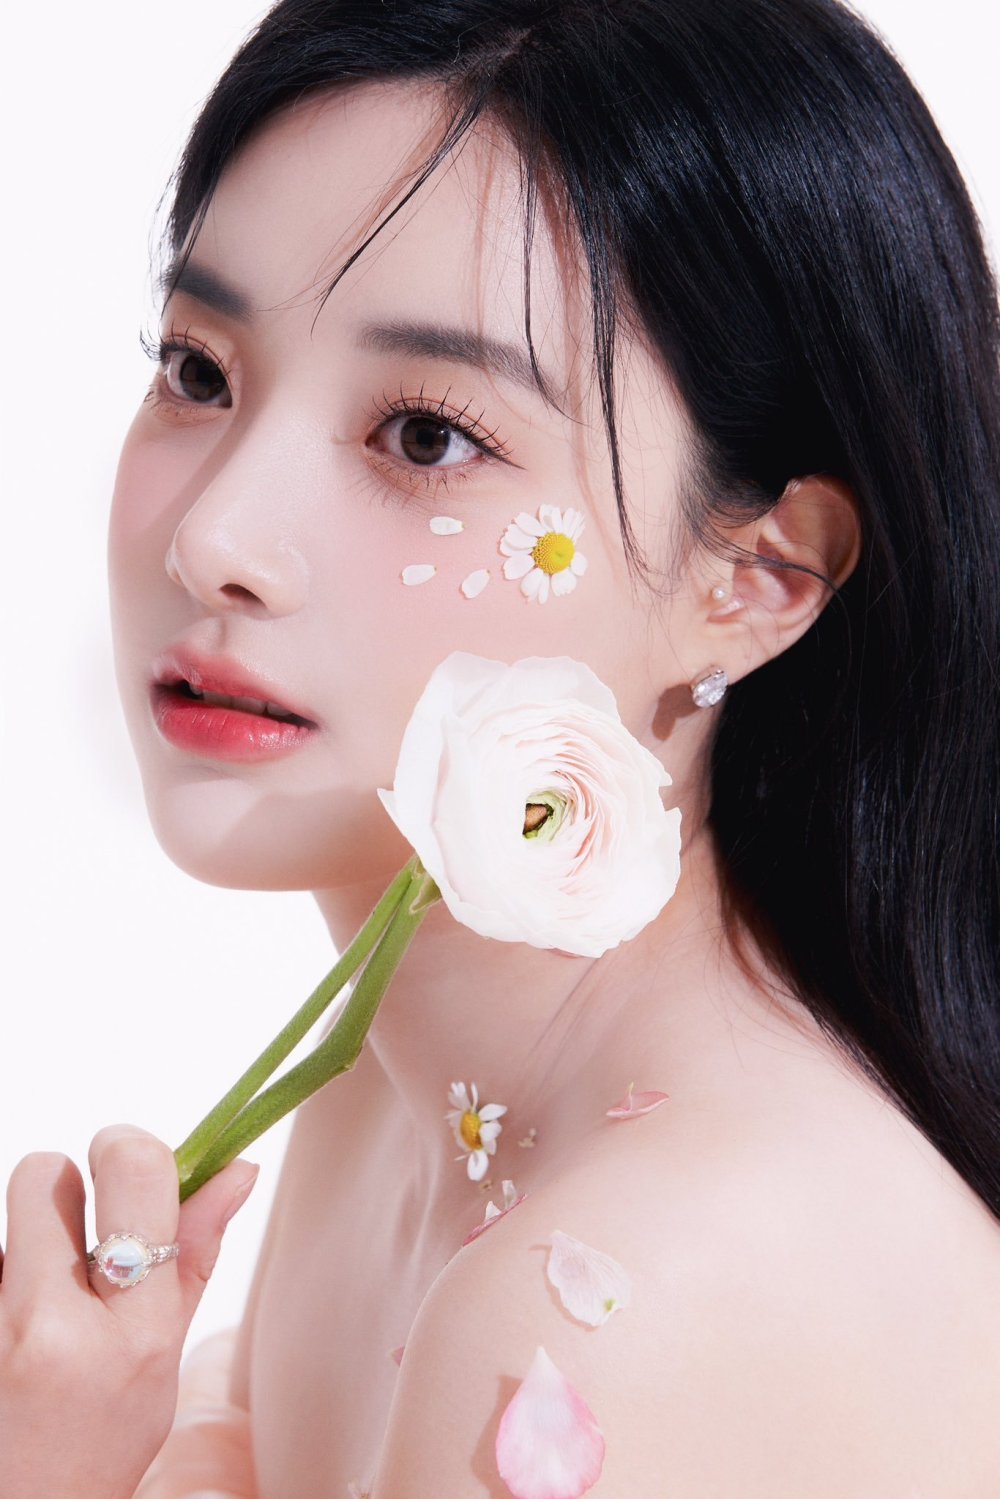 李玹珠 Sexy and Hottest Photos , Latest Pics